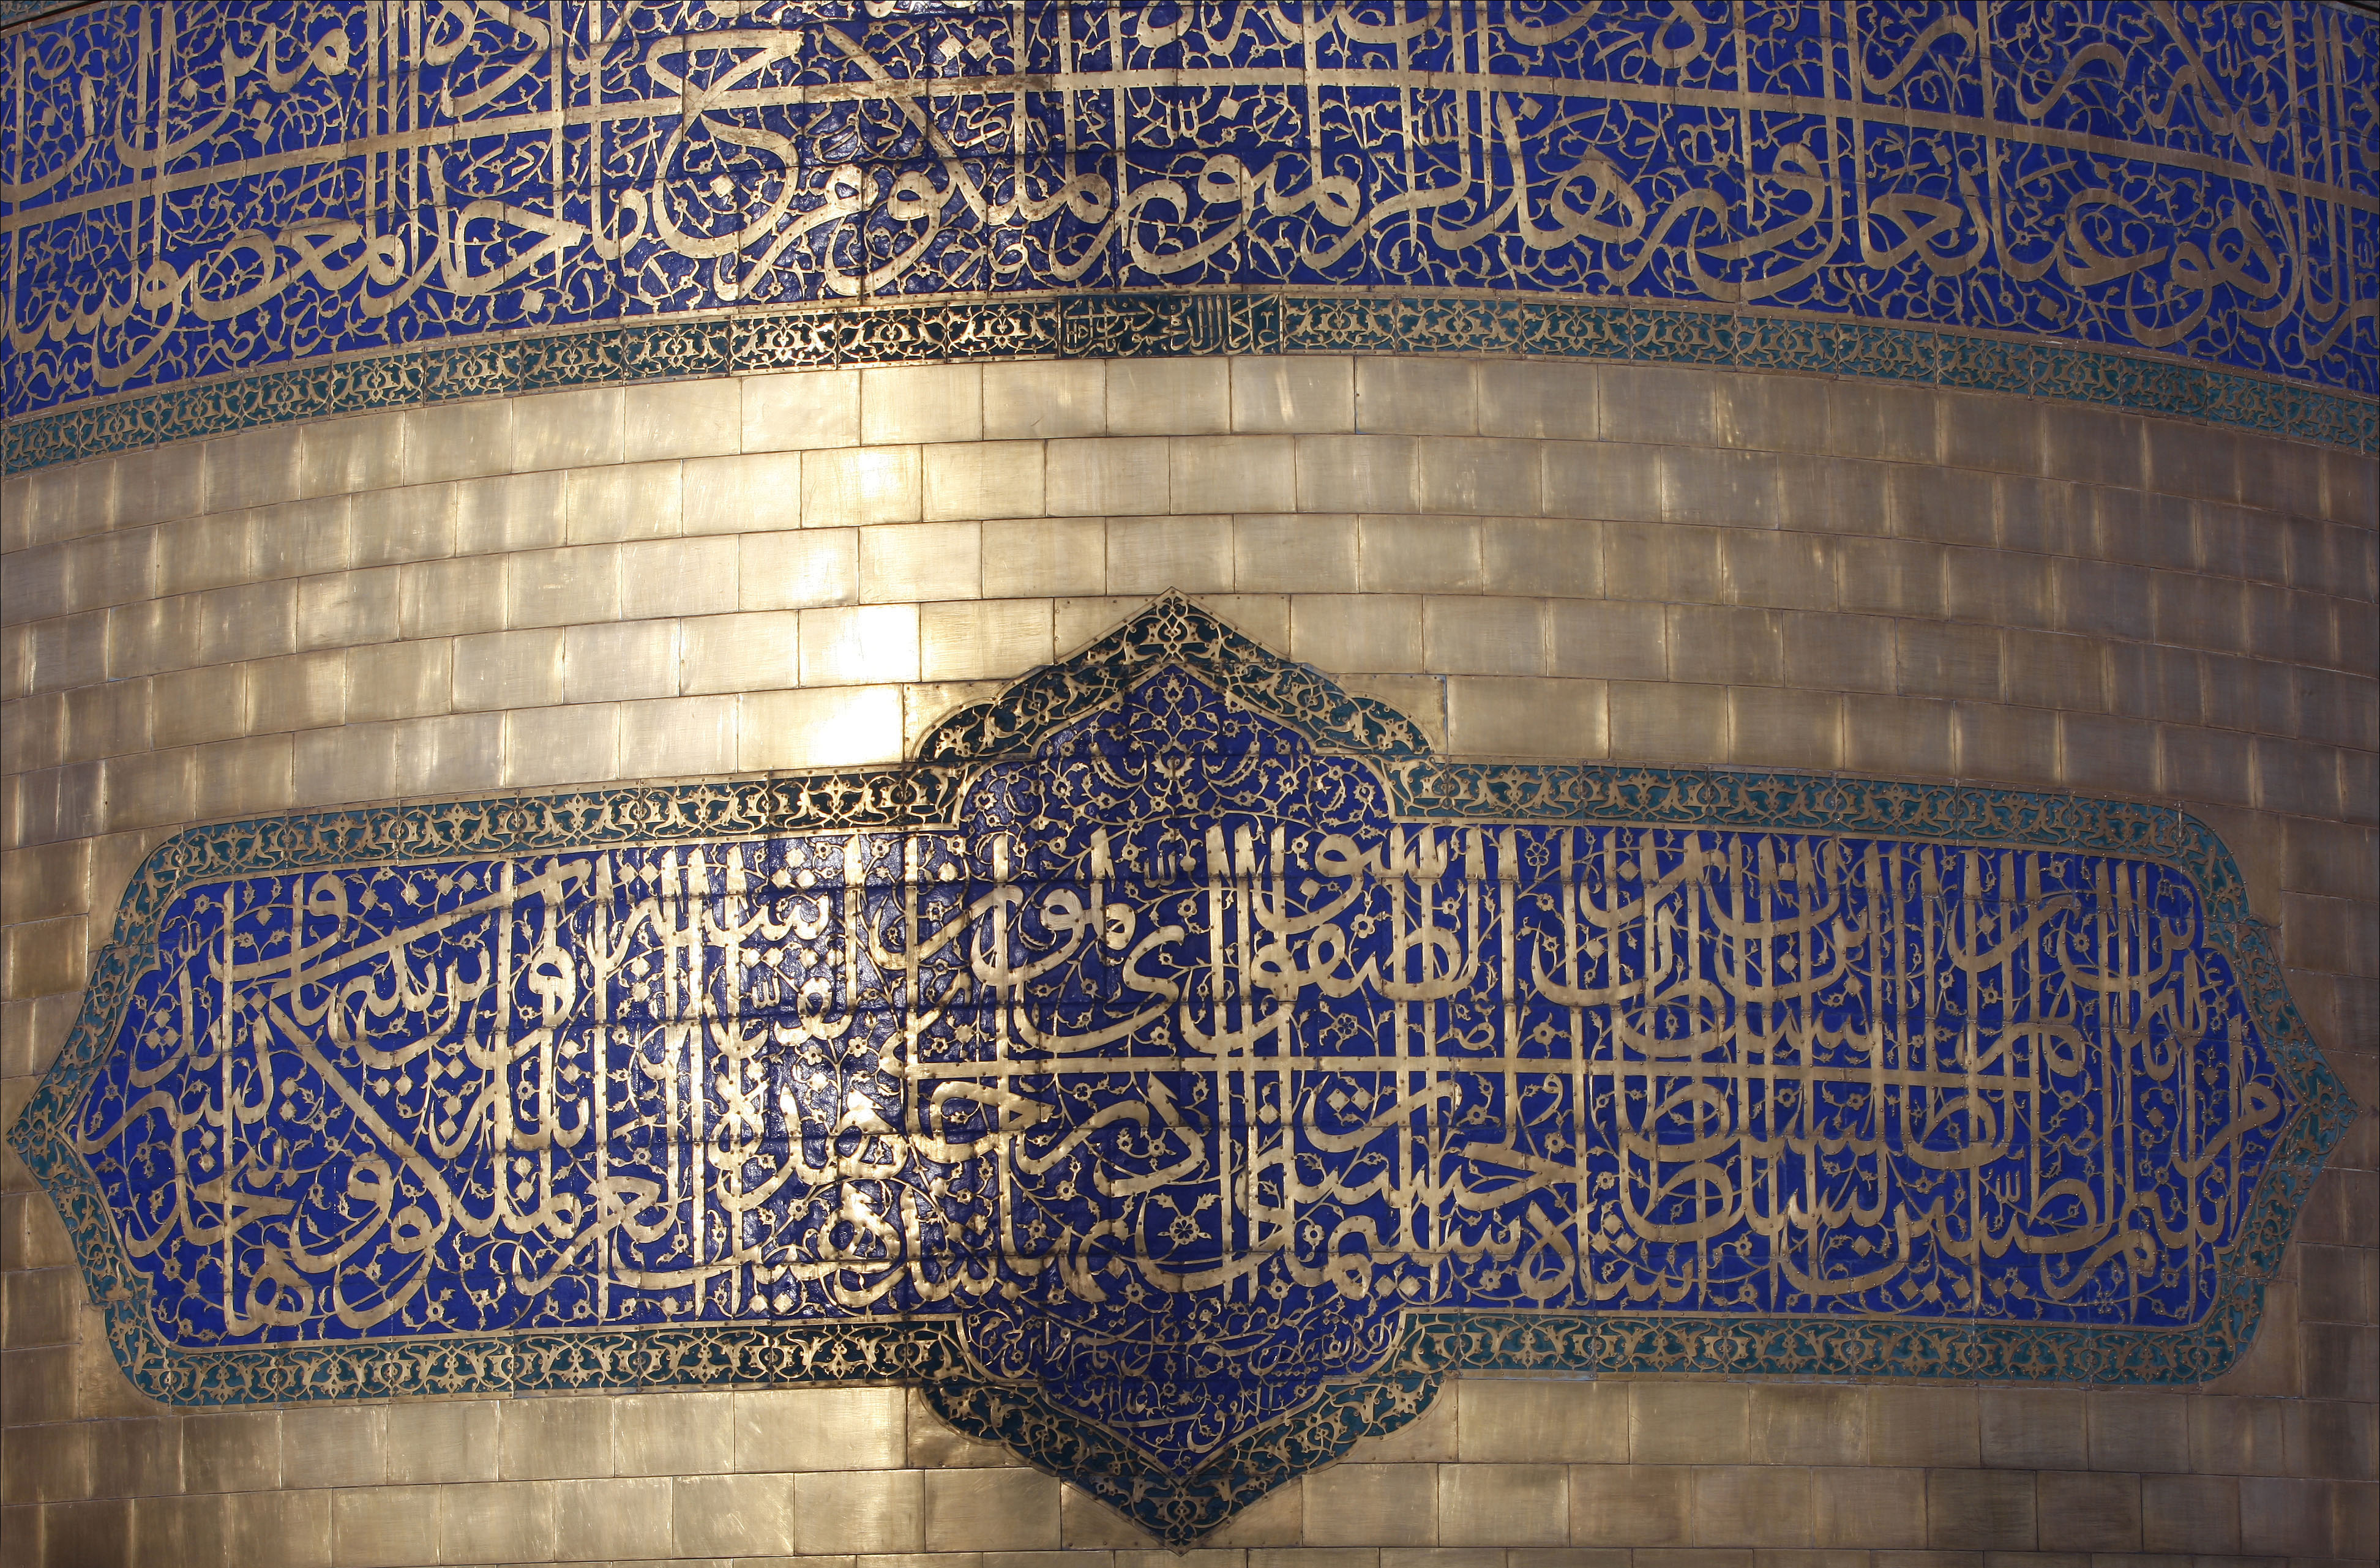 Мусульманская сонник муж. Храм имама резы. Исламское искусство. Орнамент и каллиграфия в мечетях. Арабская каллиграфия в архитектуре.